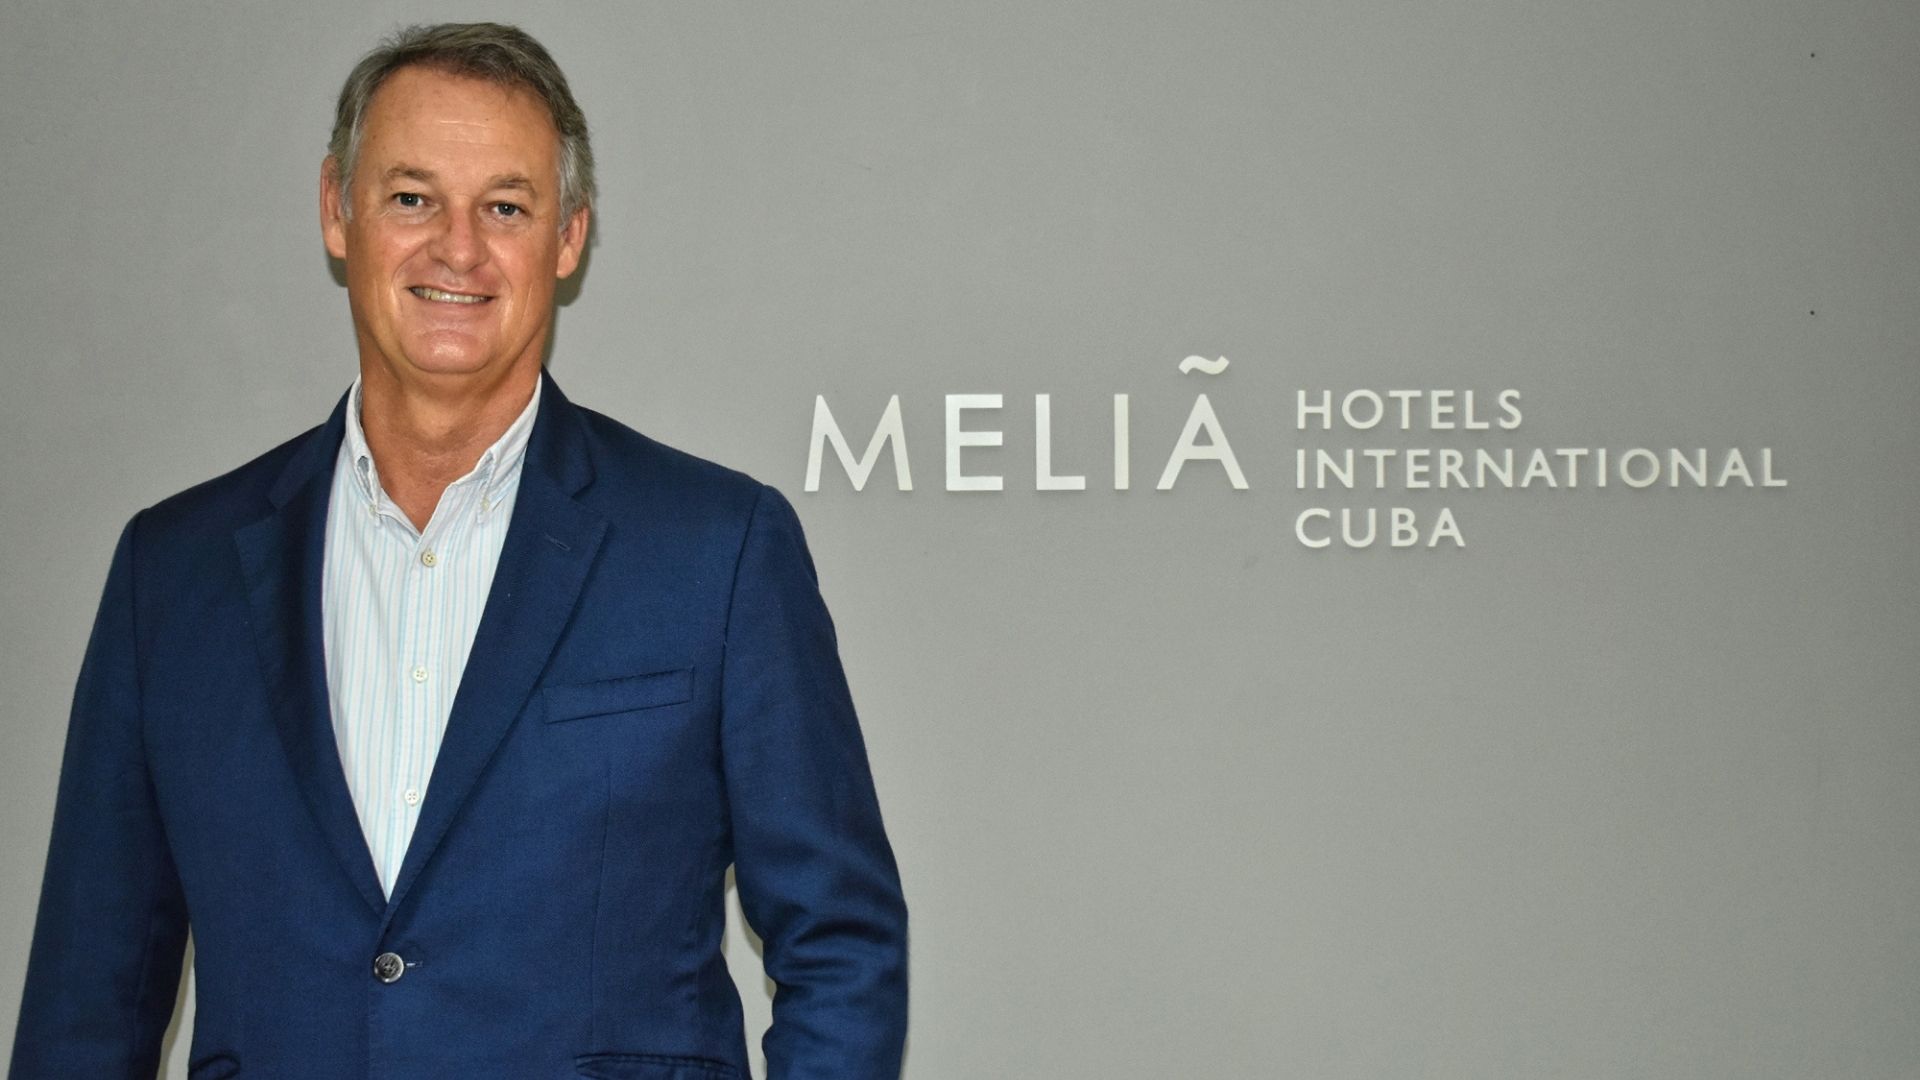 Meliá gestiona 32 establecimientos hoteleros con casi 14,000 habitaciones en Cuba, según datos de la empresa hasta 2020